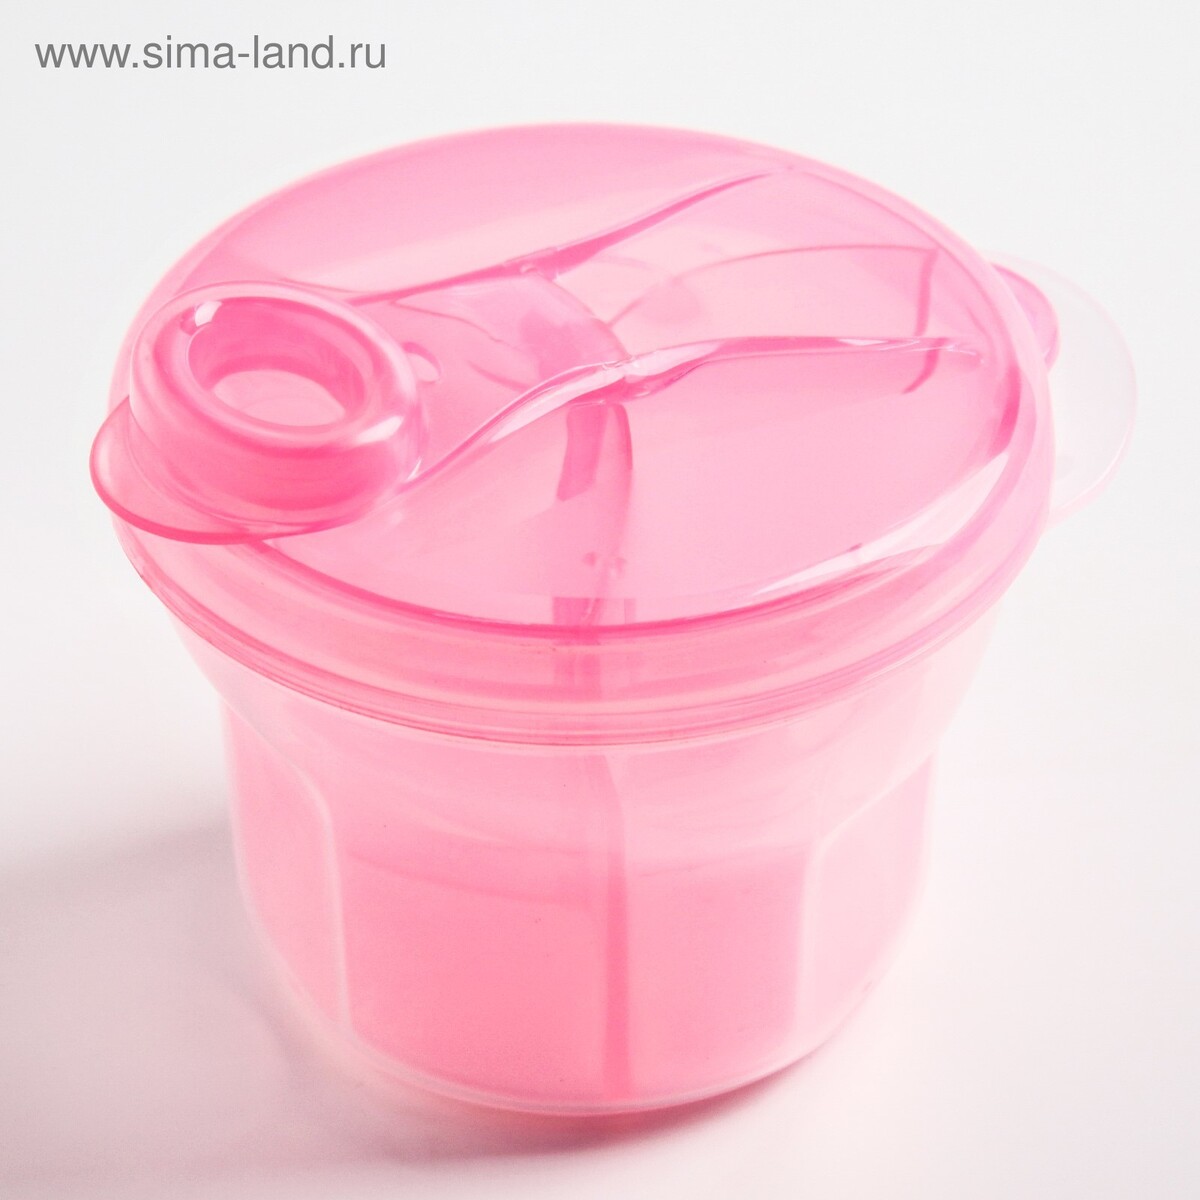 Контейнер для хранения детского питания, 3 секции, 270мл (3х90мл) цвет розовый Крошка Я